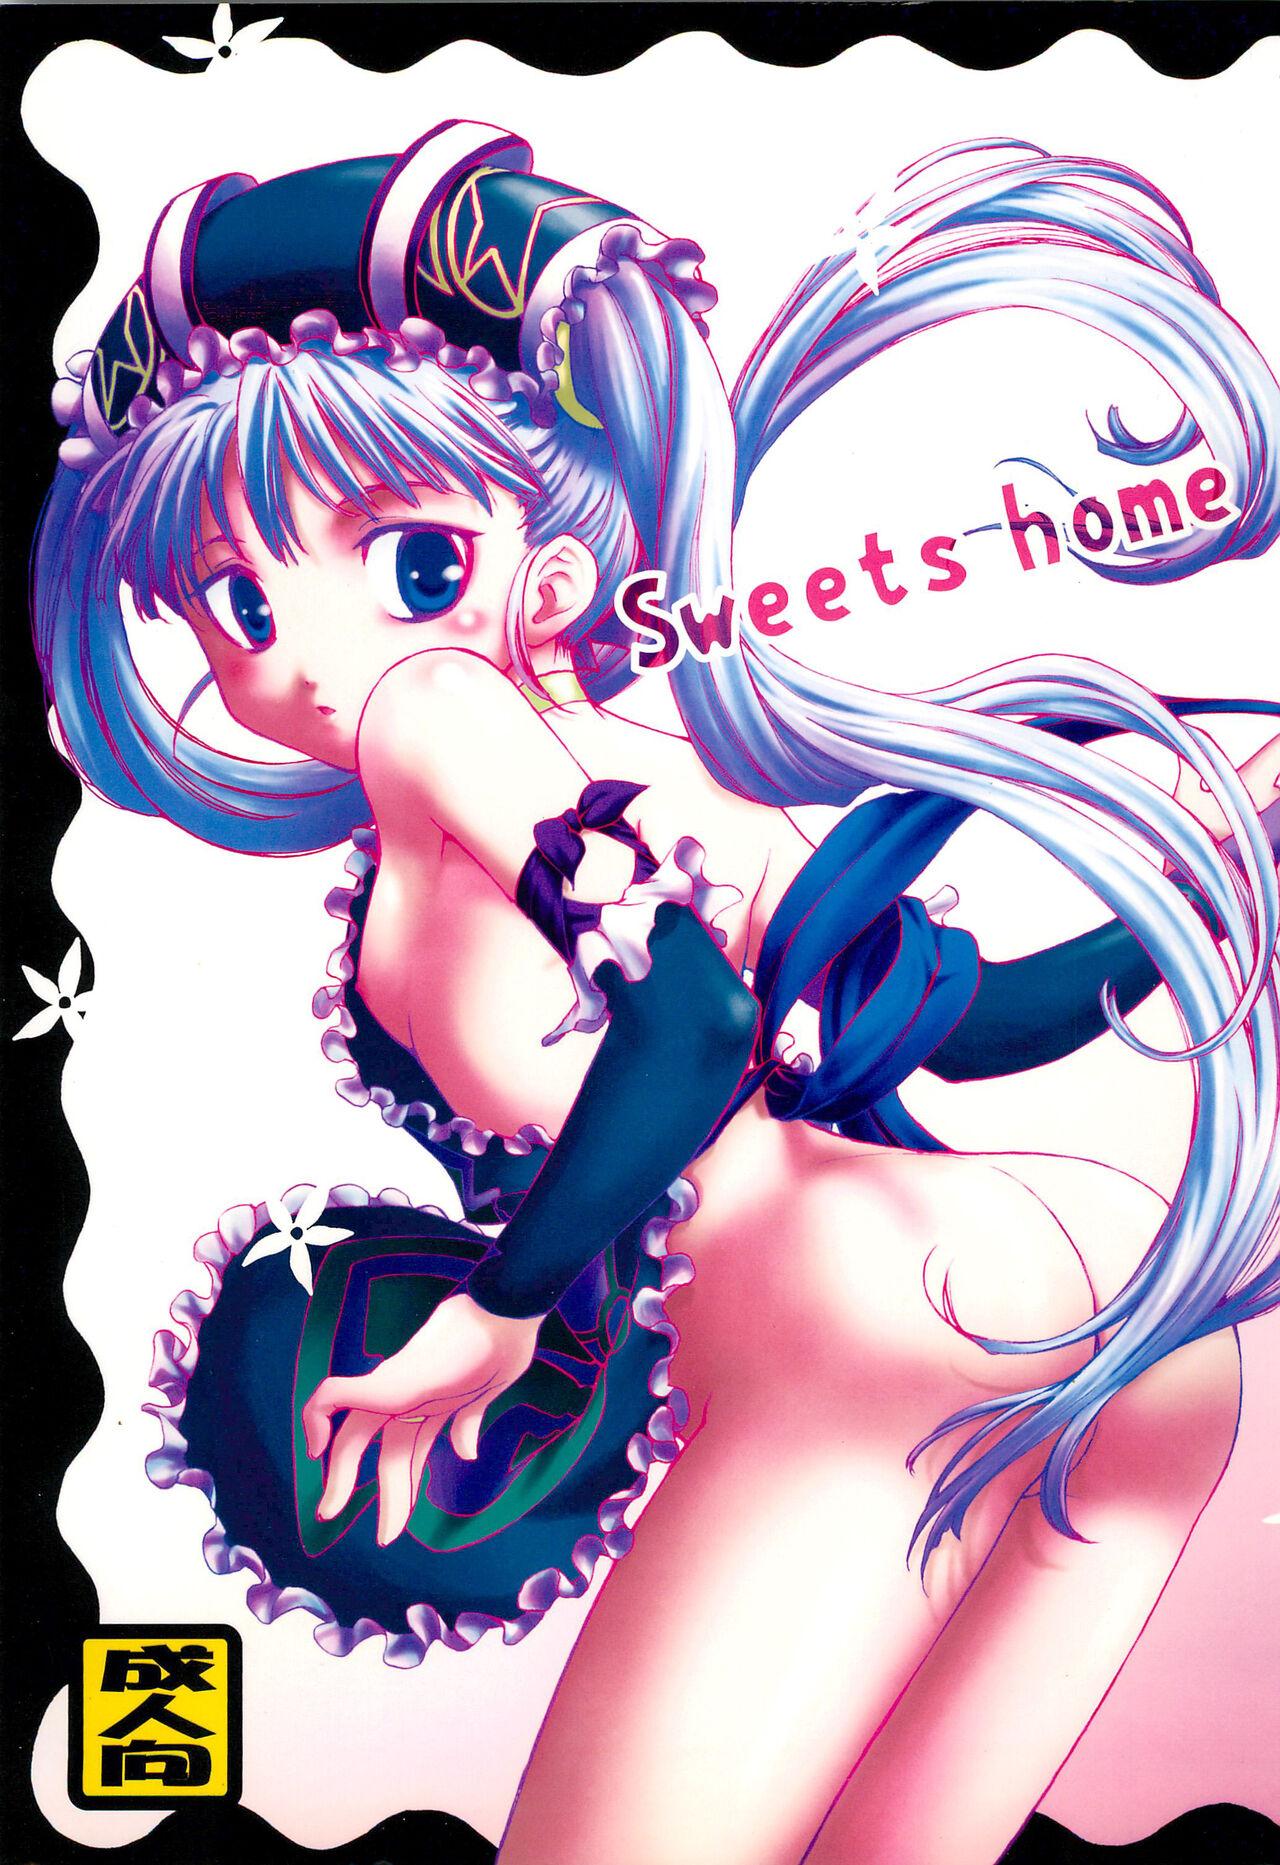 Sweets home (ぷにケット16) [勝男節 (松本英)] (おとぎ銃士赤ずきん) 0